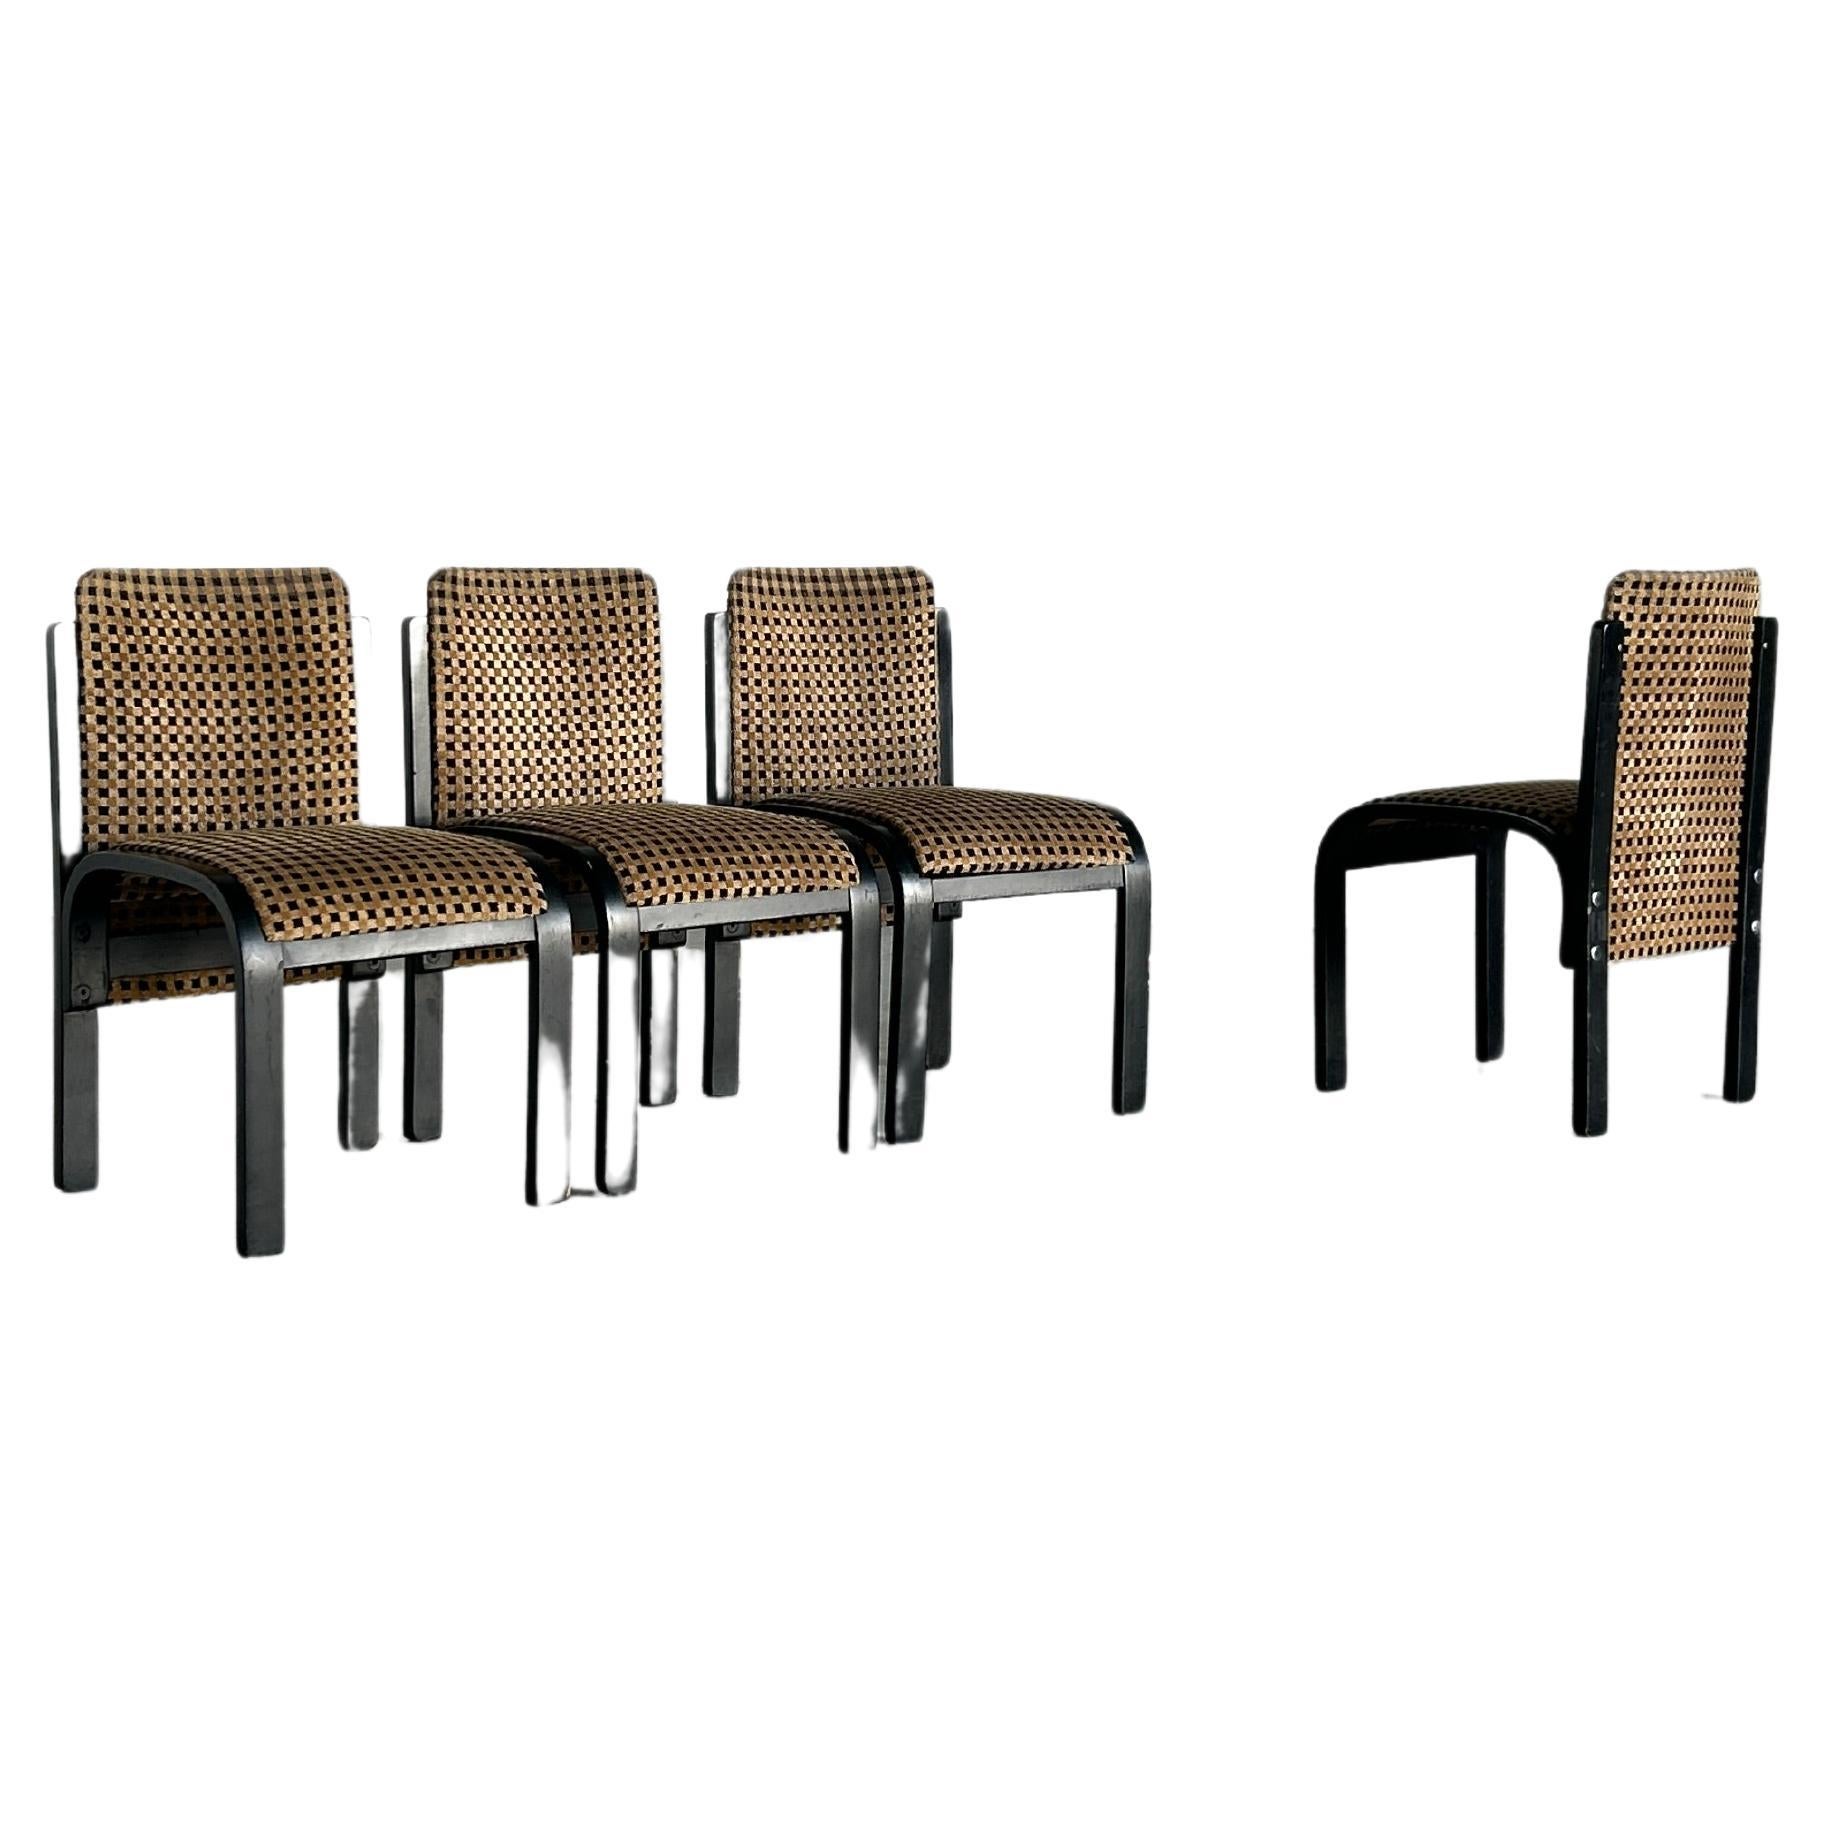 Ensemble de 4 chaises de salle à manger italiennes sculpturales en bois cintré laqué, motif géométrique